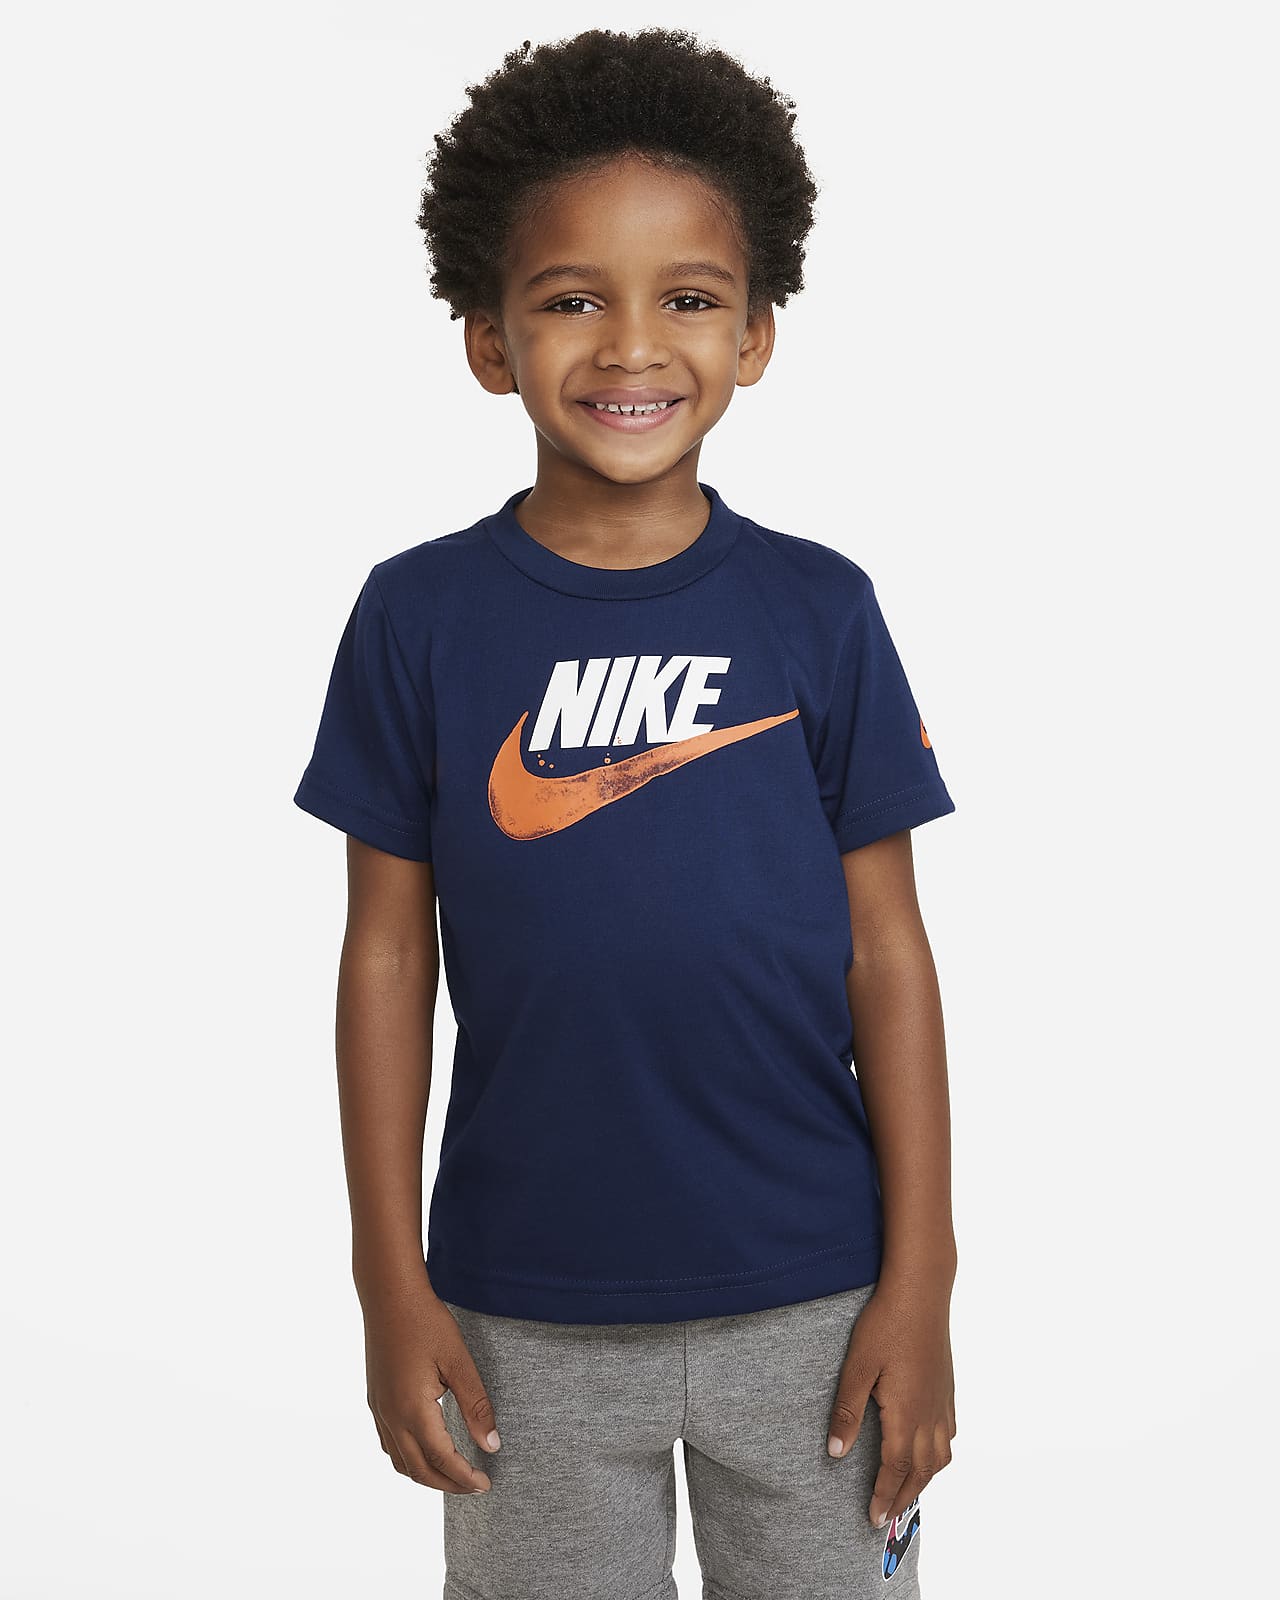 Nike Shirts Toddler | vlr.eng.br